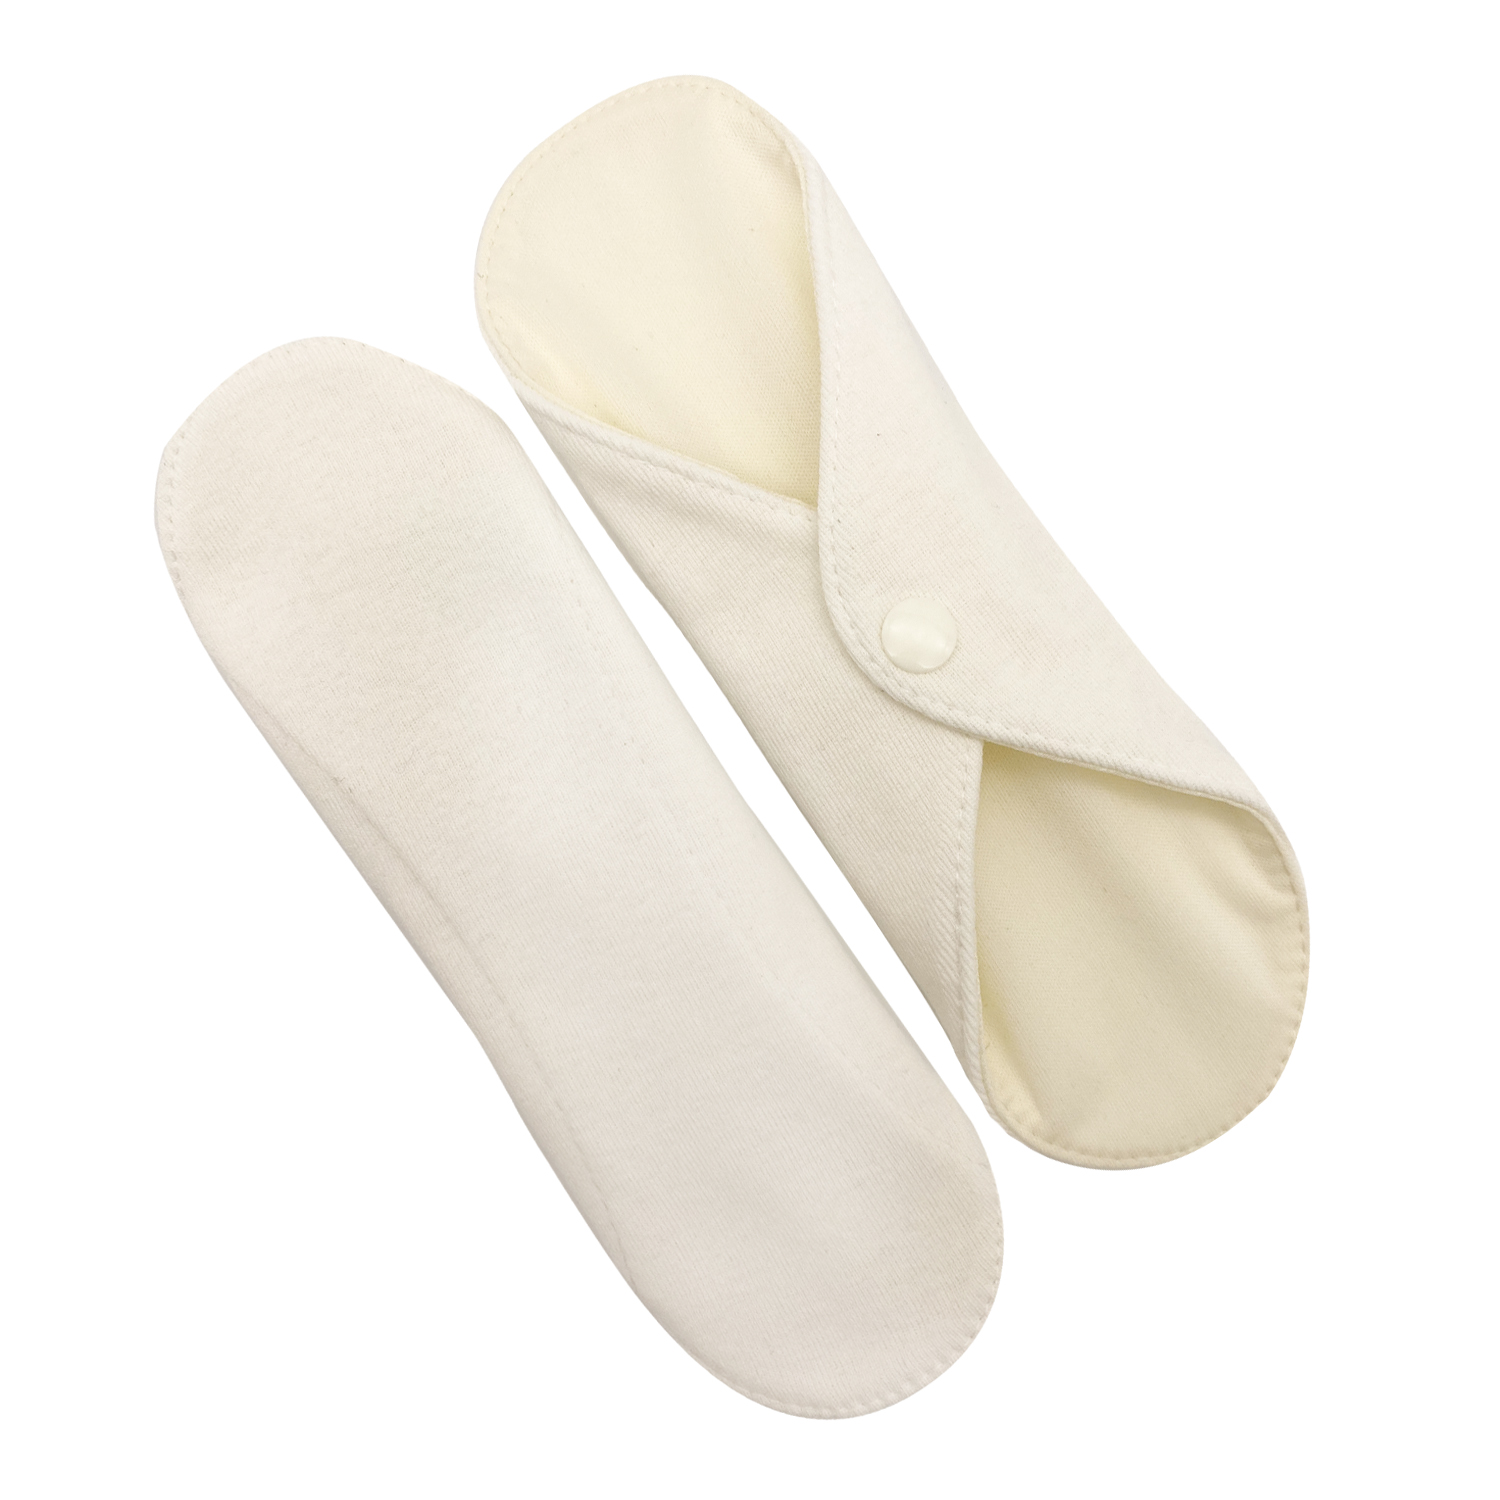 Прокладки для менструации многоразовые Mamalino бежевые набор 2 шт. размер Миди многоразовые прокладки mum s era f36996 хлопок комплект 3 шт